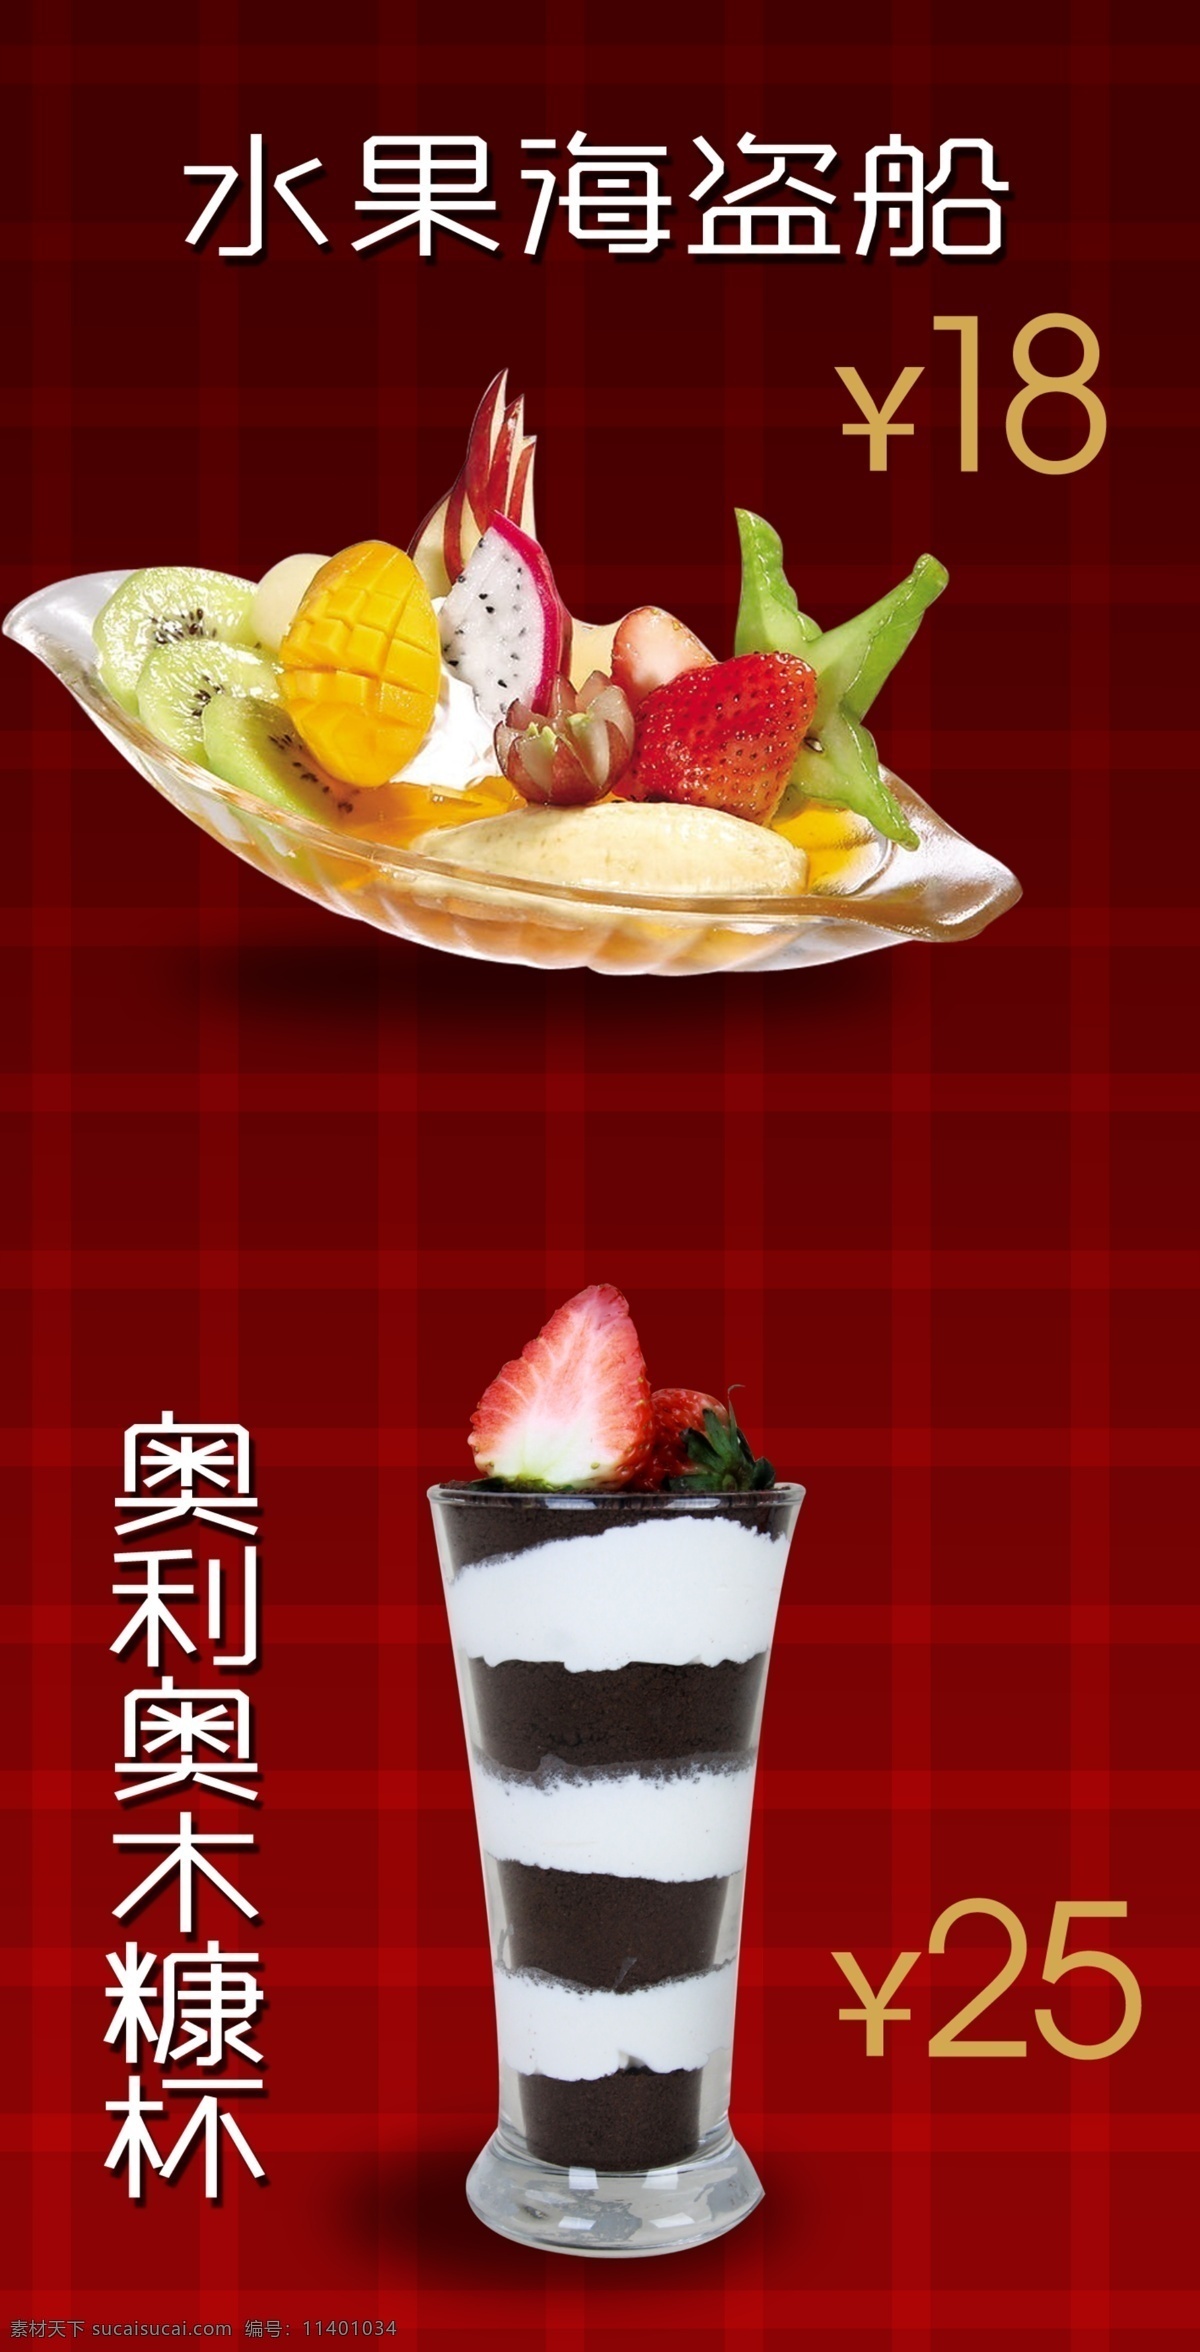 鲜果饮品 水果饮品 木糠杯 饮品图 饮品素材 甜点 甜点素材 水果船 饮品背景 红色背景 饮品海报 分层